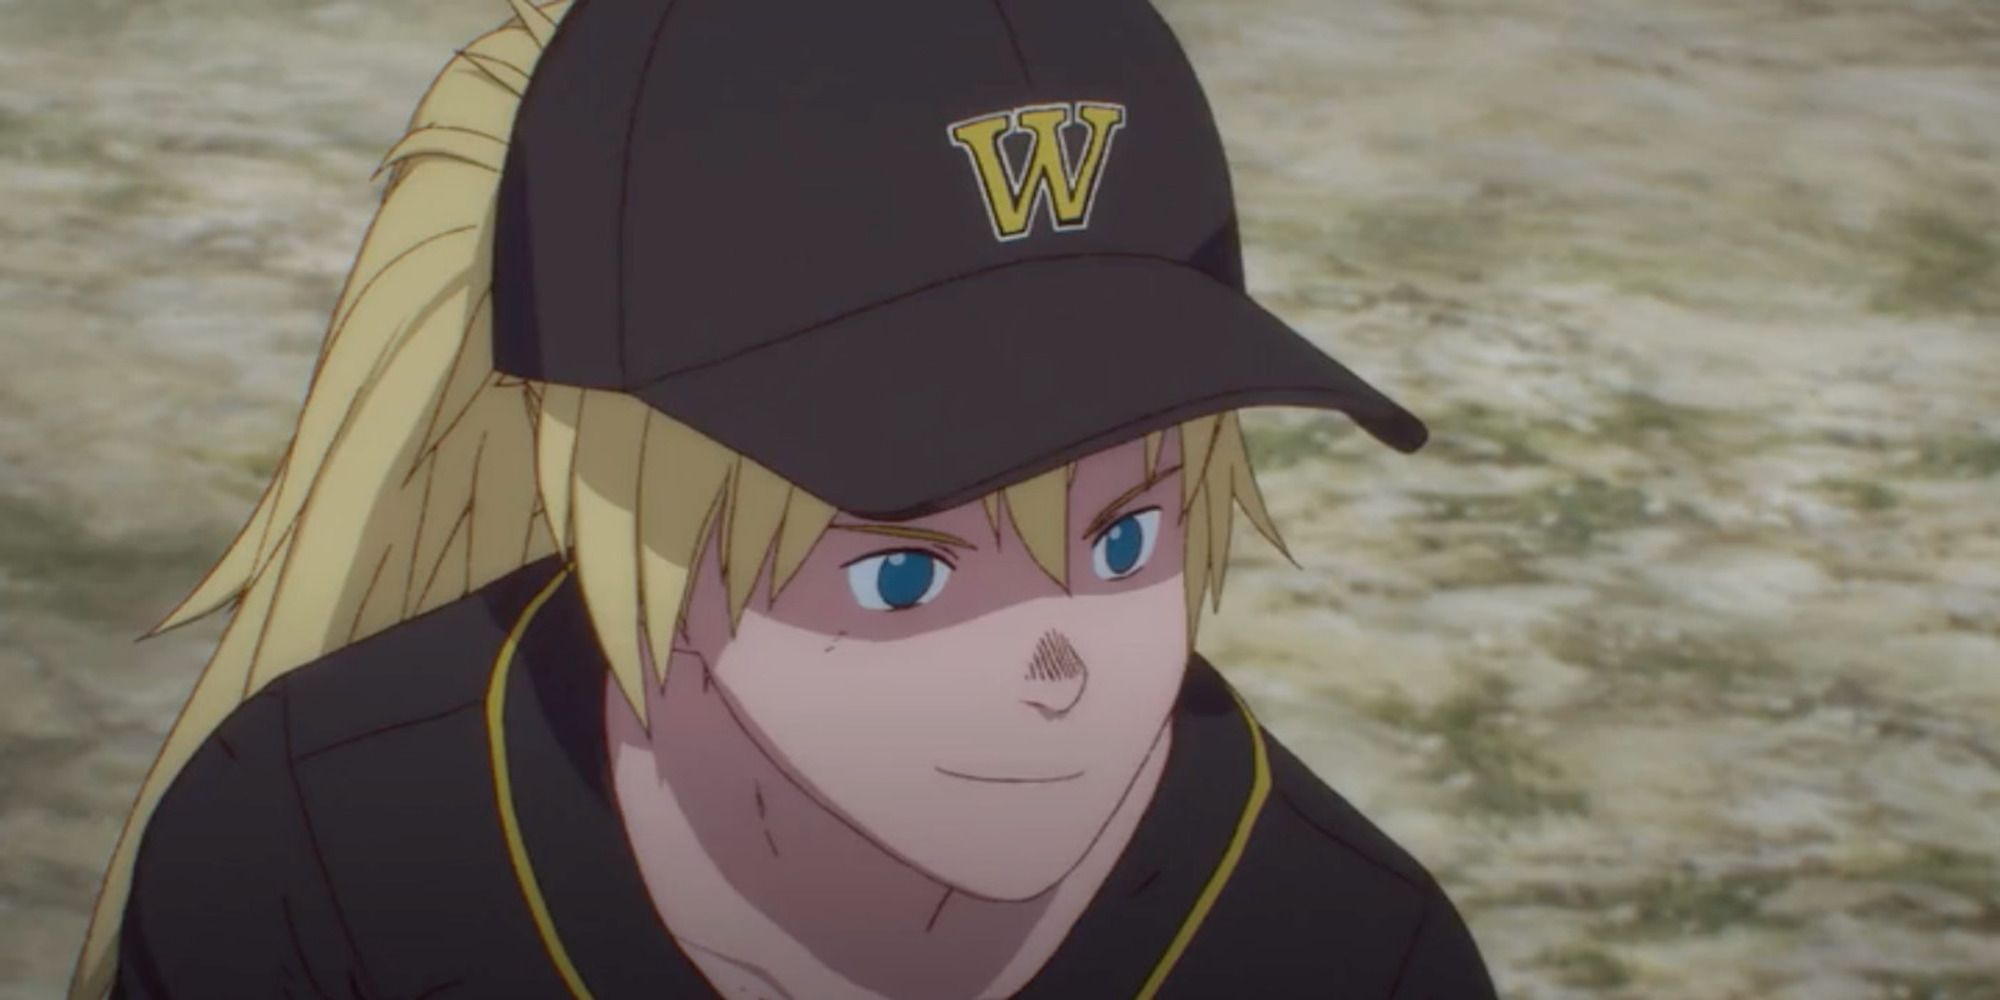 Nikaido wearing baseball cap